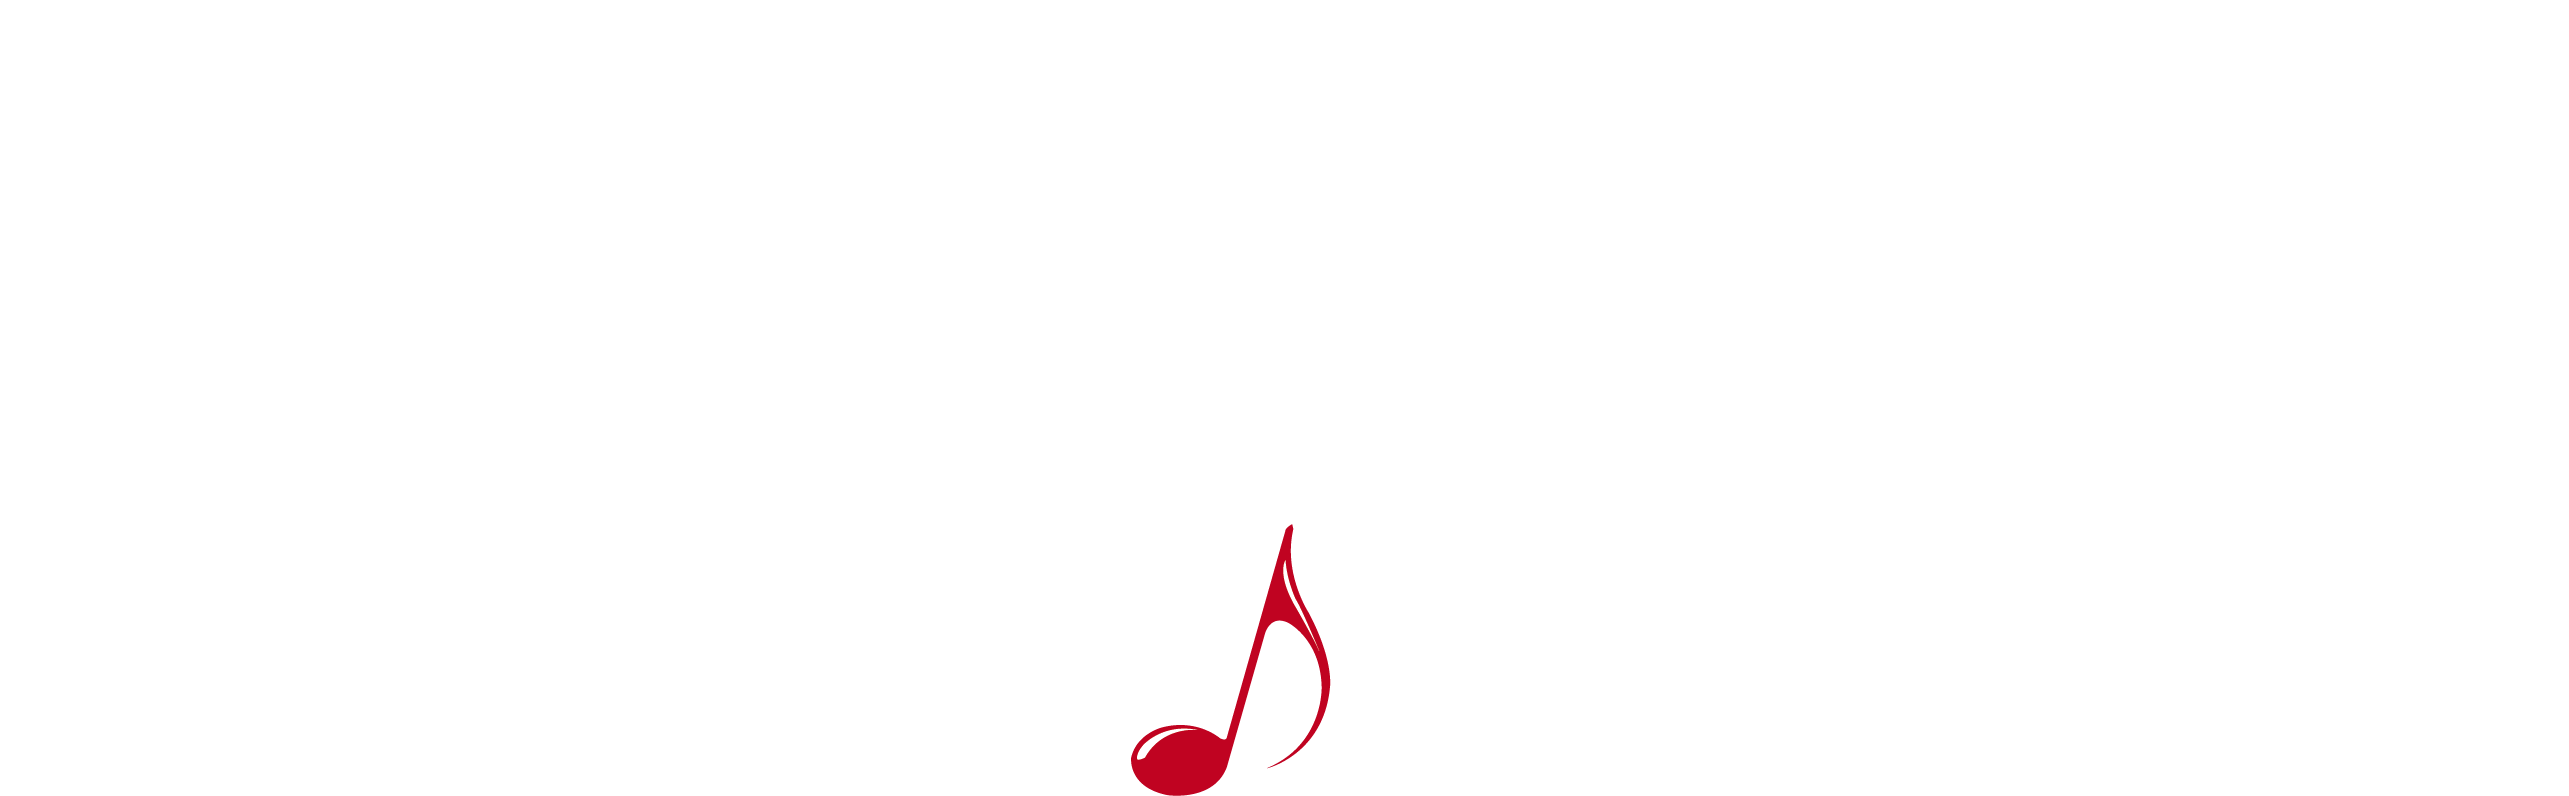 Visit Nashville Logo - White Straight